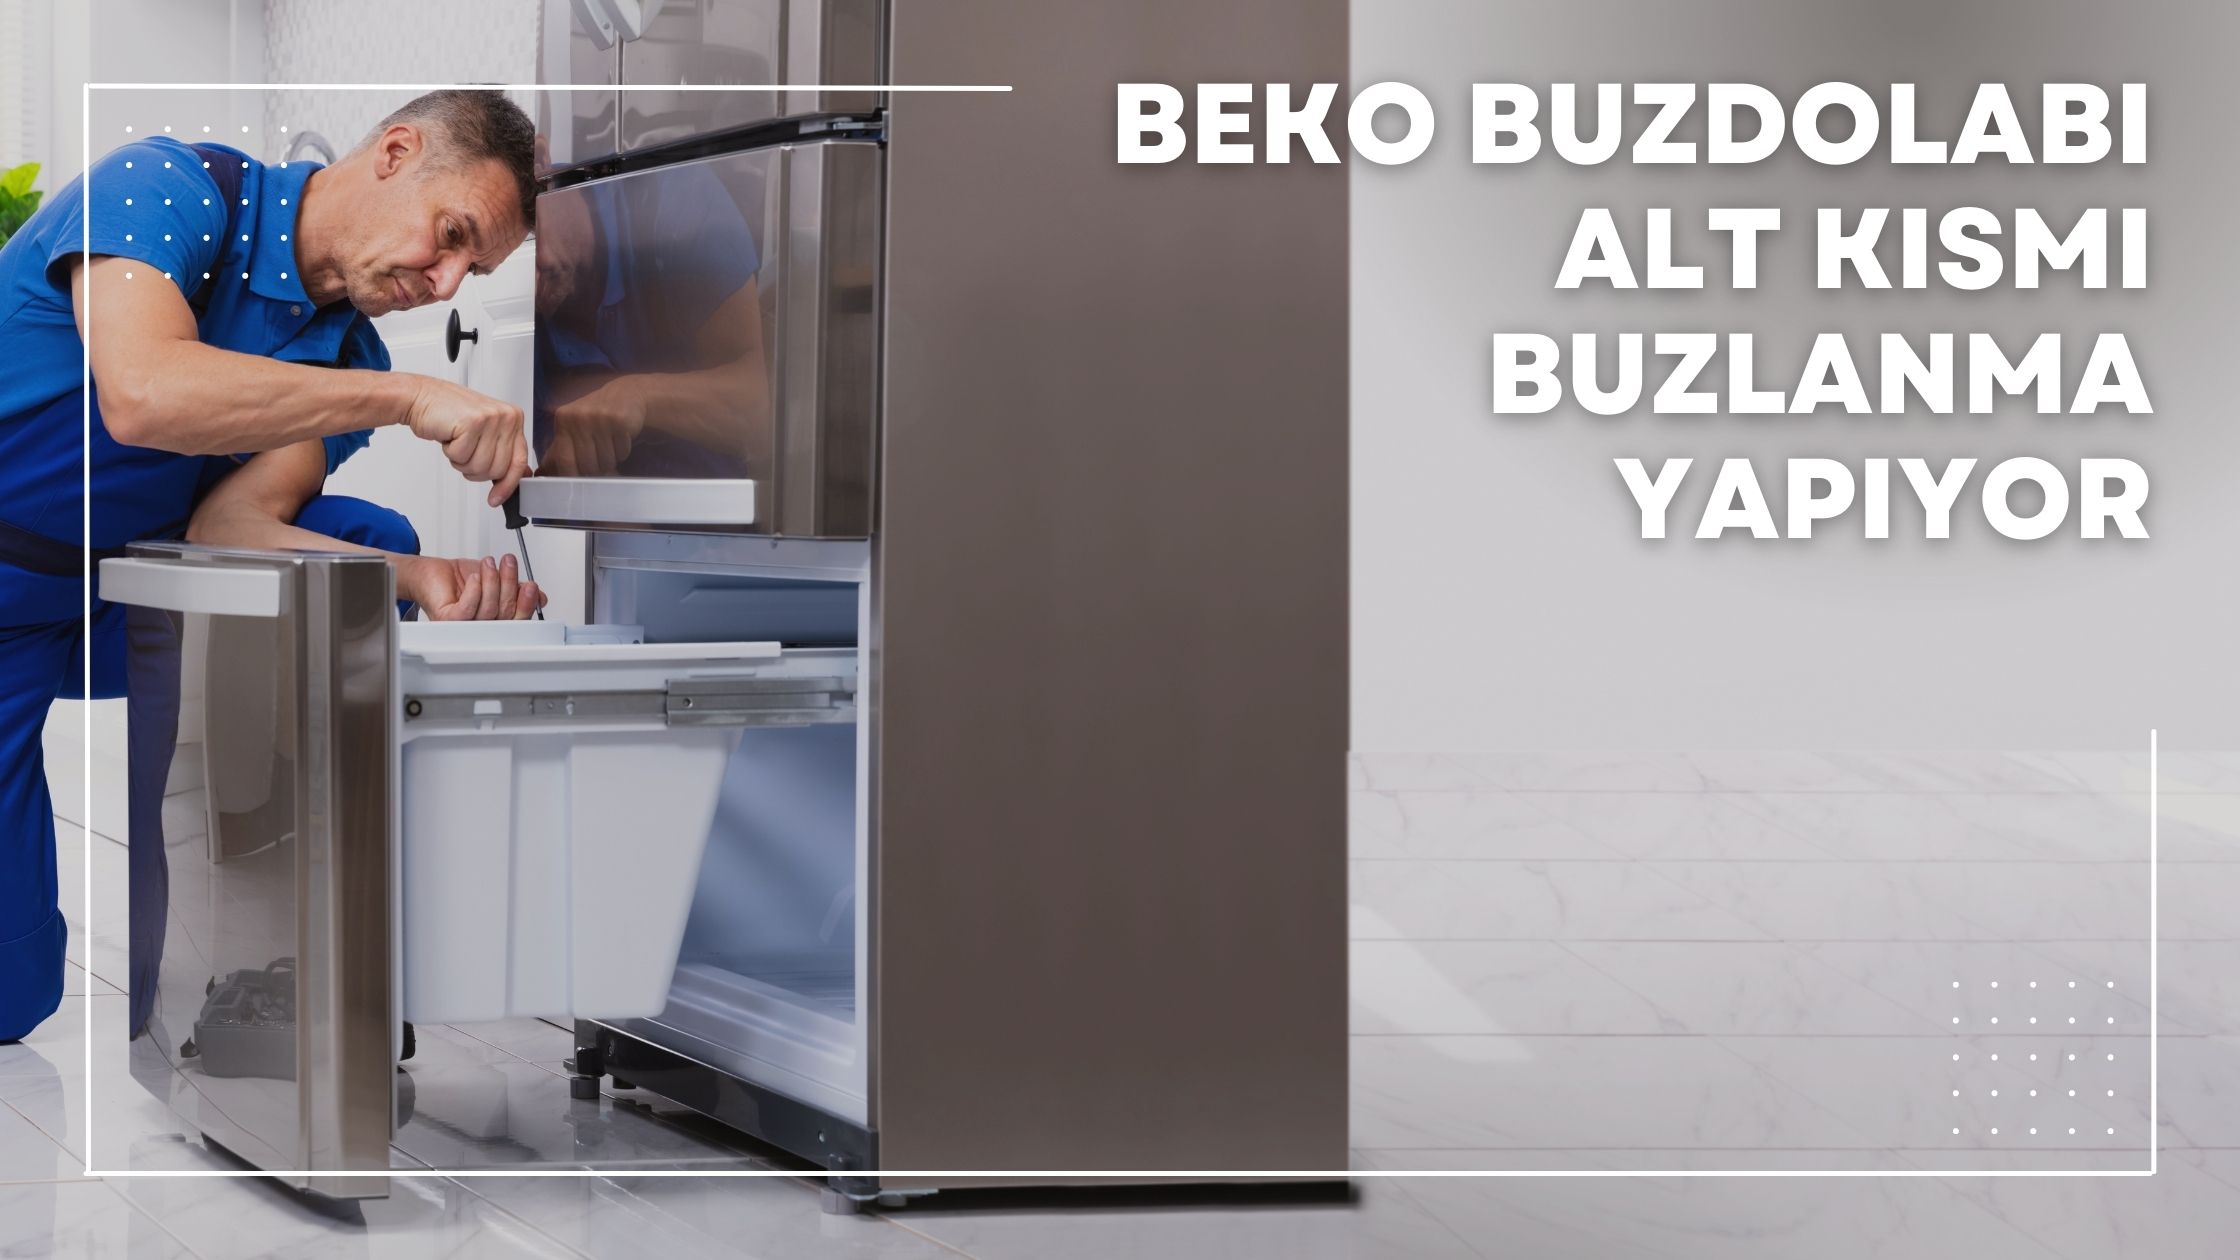 Beko Buzdolabı Alt Kısmı Buzlanma Yapıyor